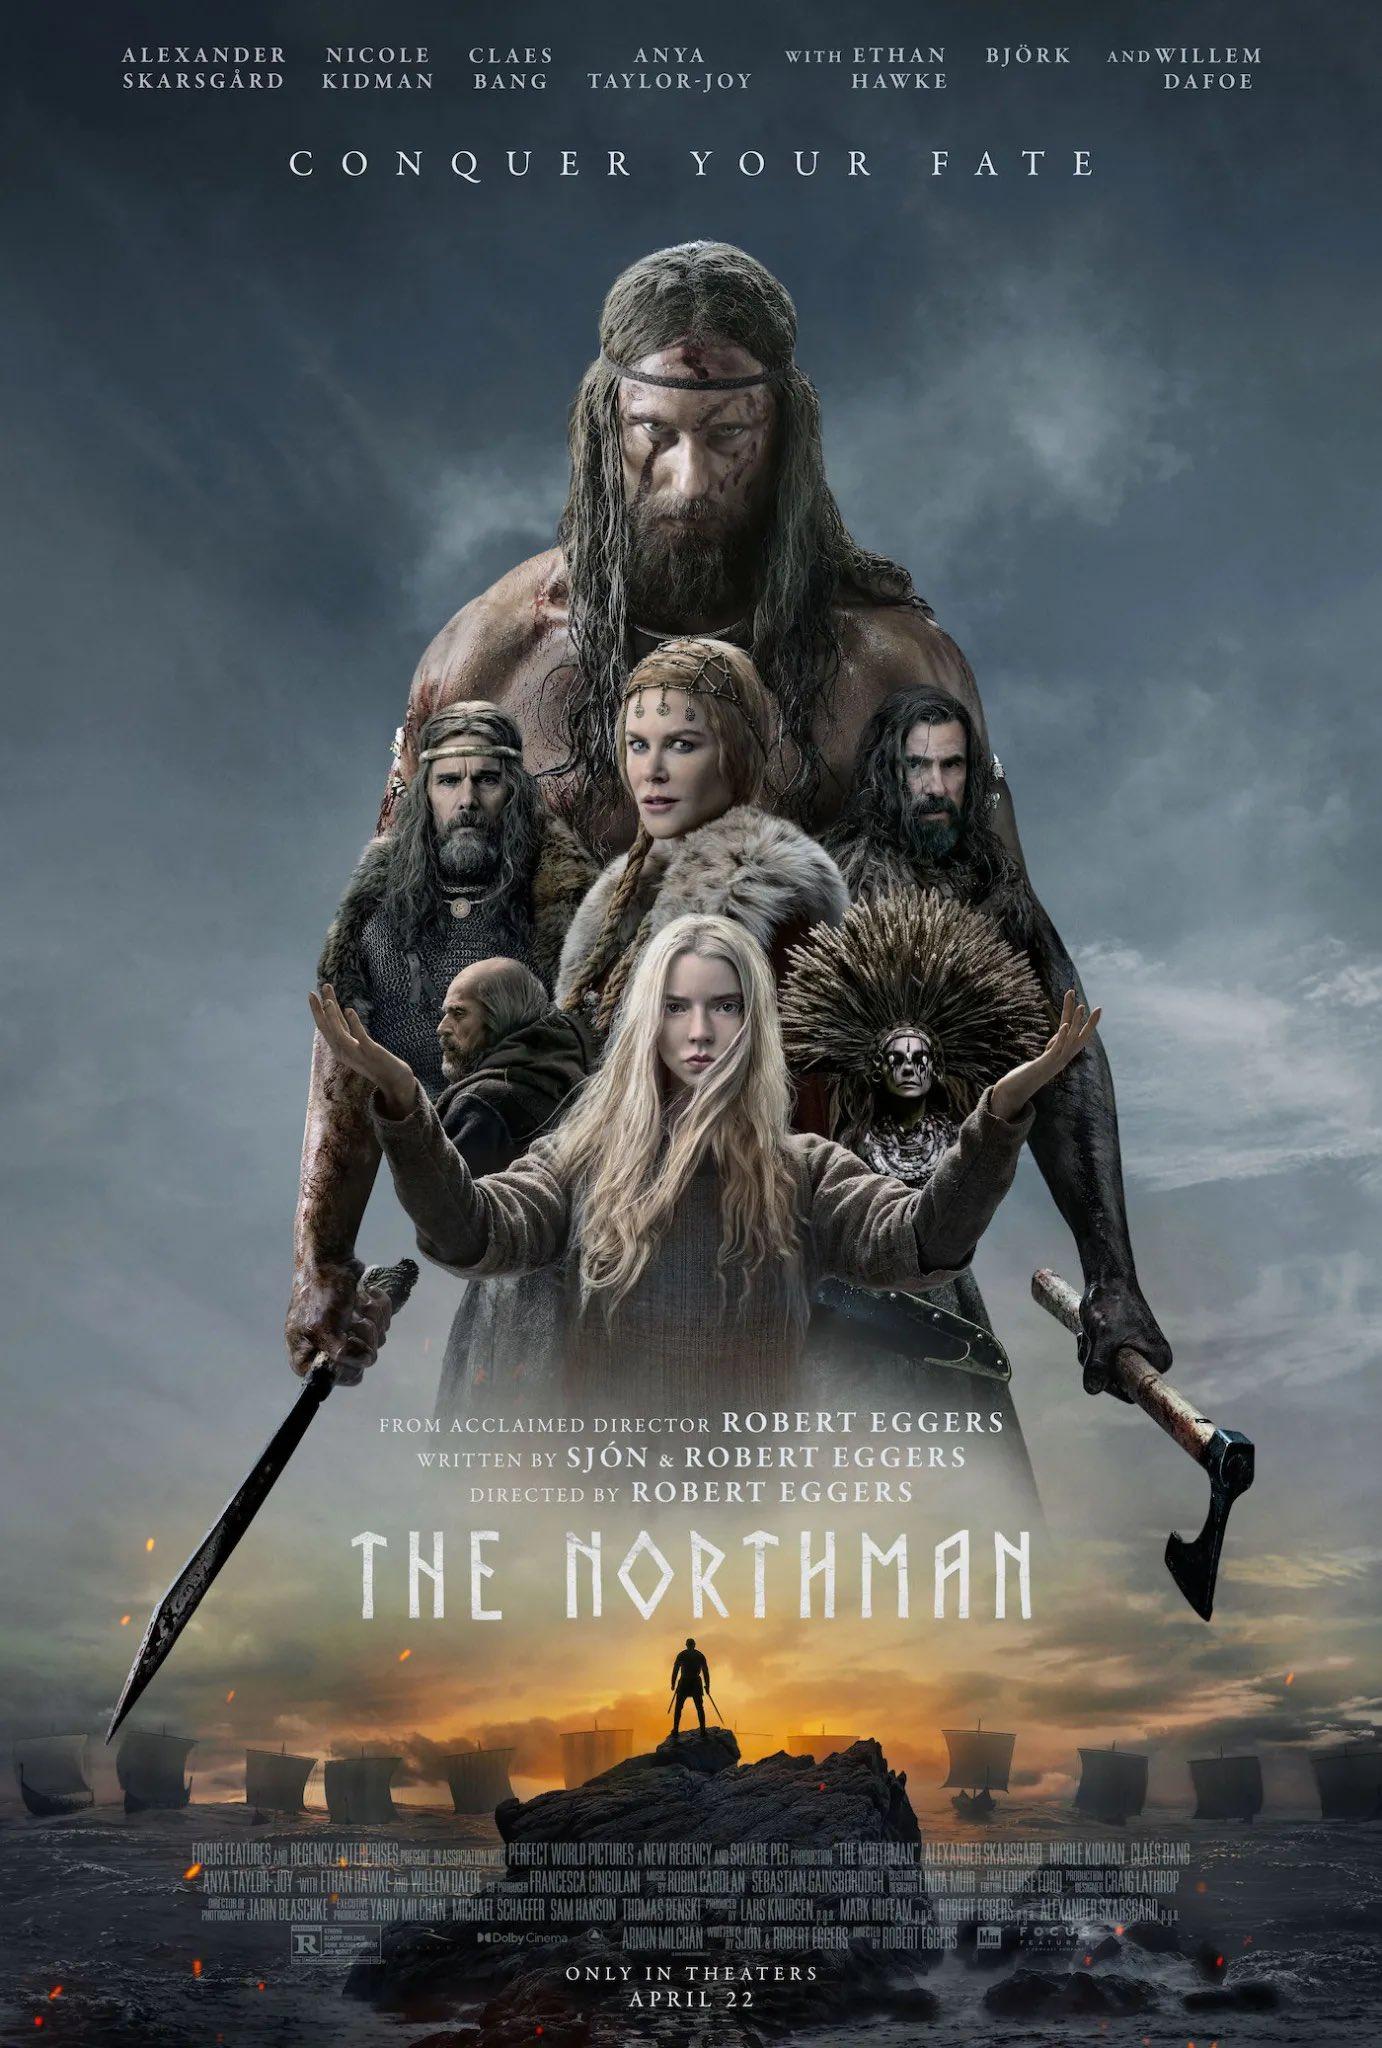 The Northman: Bộ phim sắp tới của The Northman đánh dấu sự trở lại của các diễn viên được yêu thích như Alexander Skarsgård và Anya Taylor-Joy. Điều đó chỉ ra rằng đây sẽ là một bộ phim đáng xem với bối cảnh tuyệt đẹp và câu chuyện kịch tính.